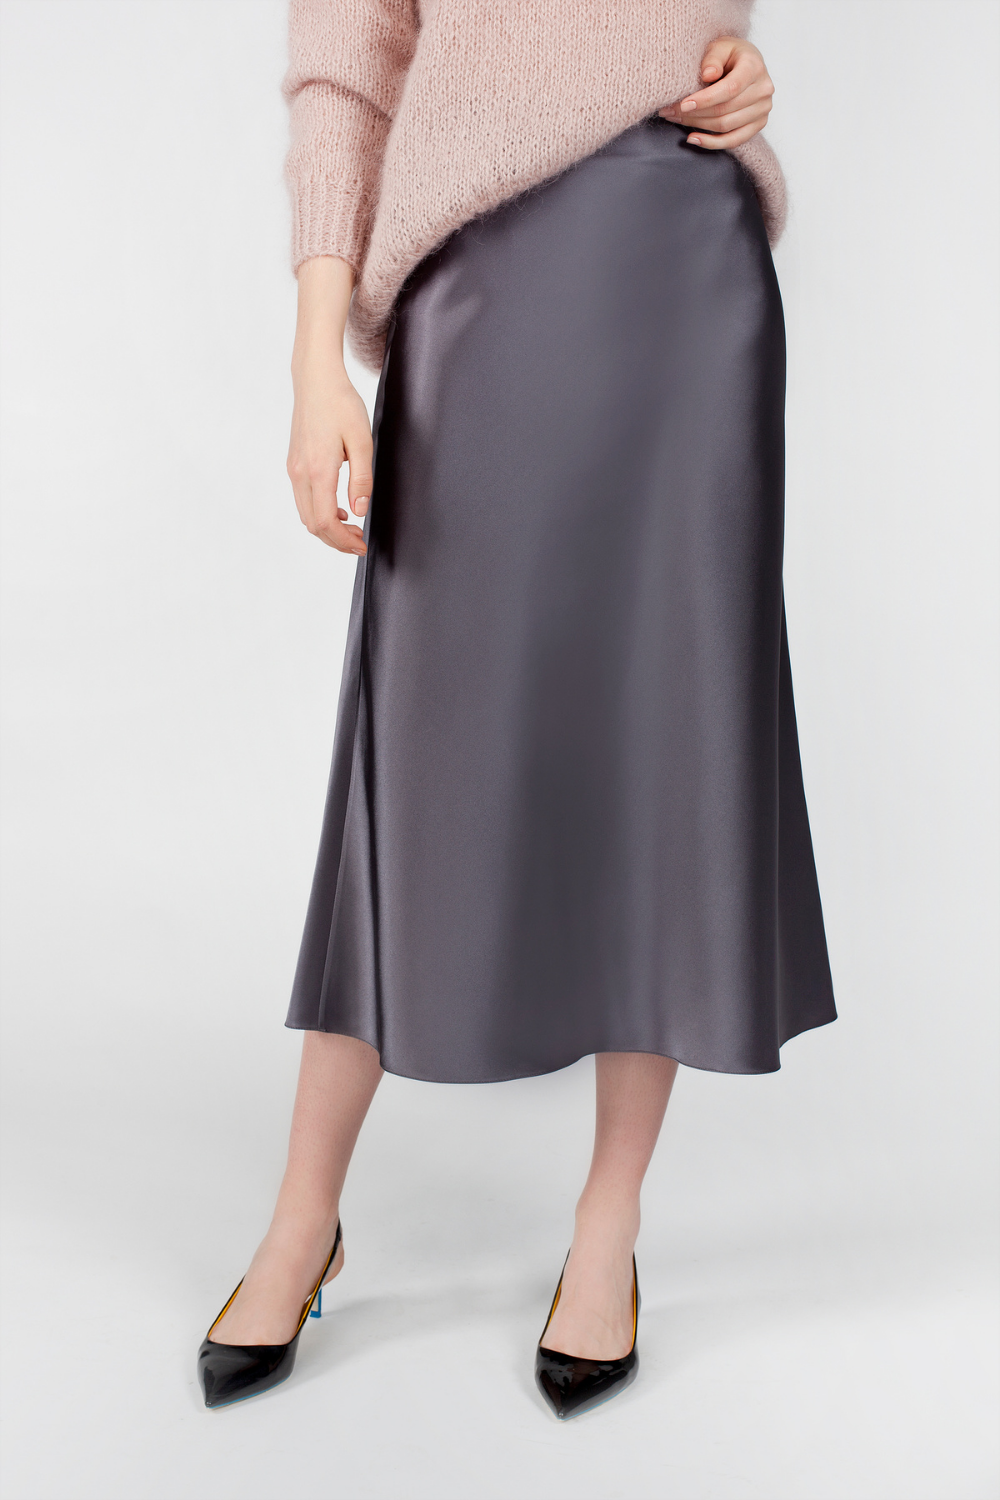 Hedvábná sukně se zipem (Miss Secret) SK-005